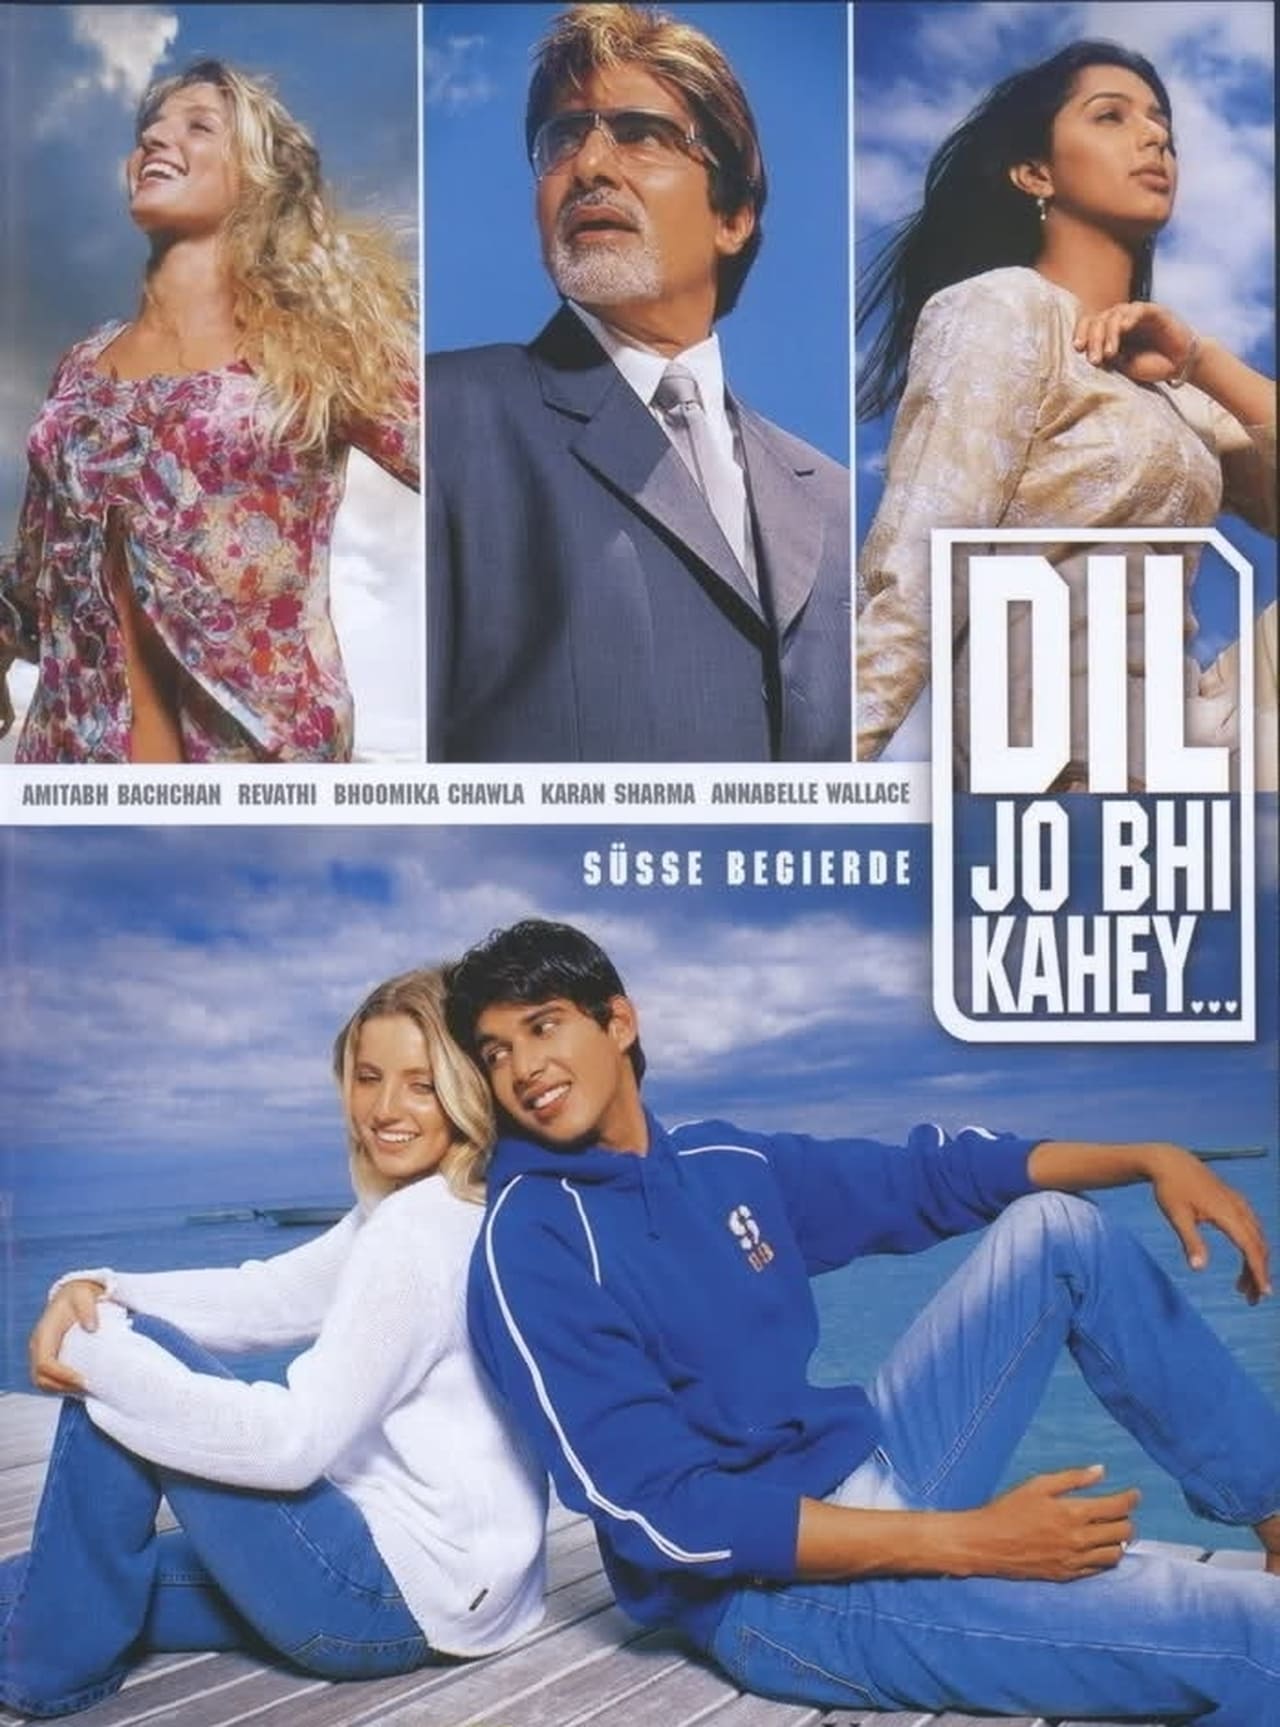 Dil Jo Bhi Kahey - Süße Begierde (2006)